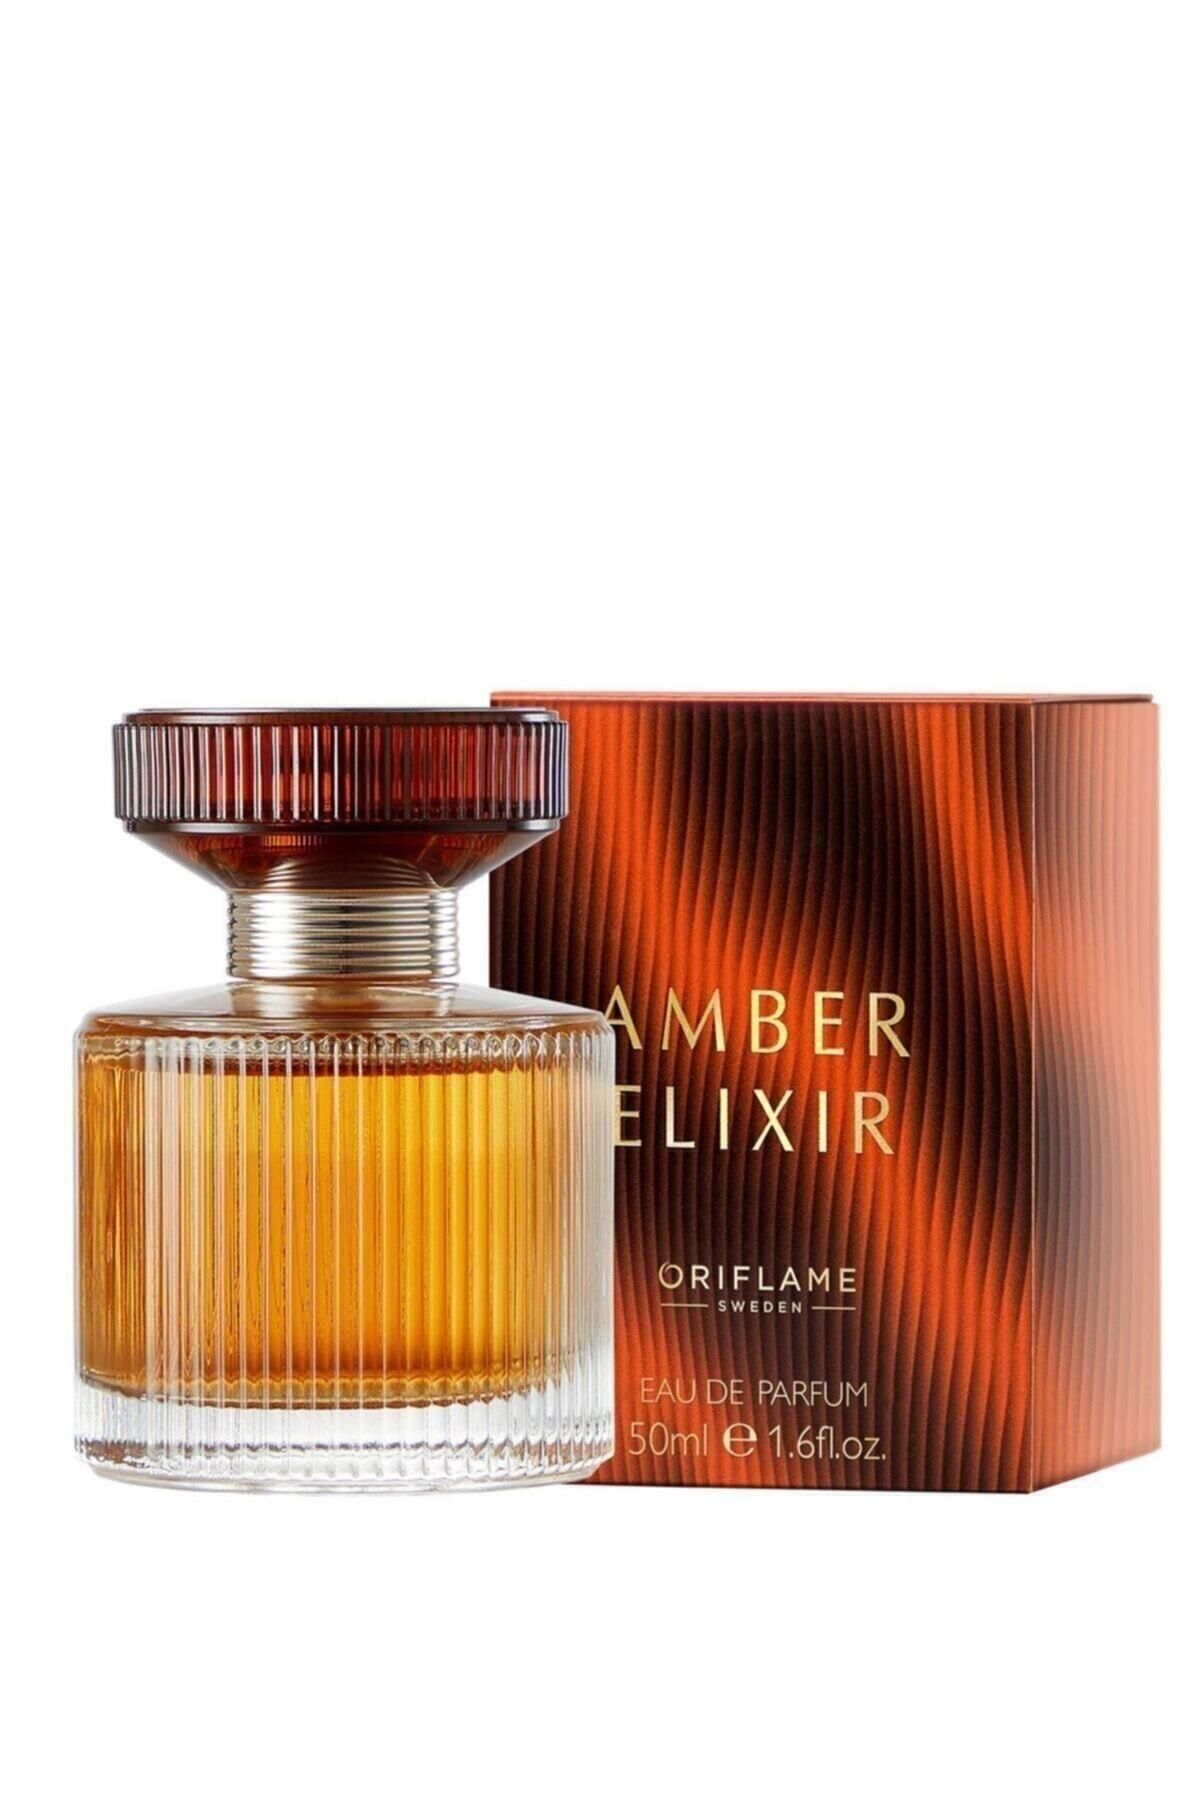 Oriflame Amber Elixir Edp 50 ml Kadın Parfüm ELİTKOZMETİK00052